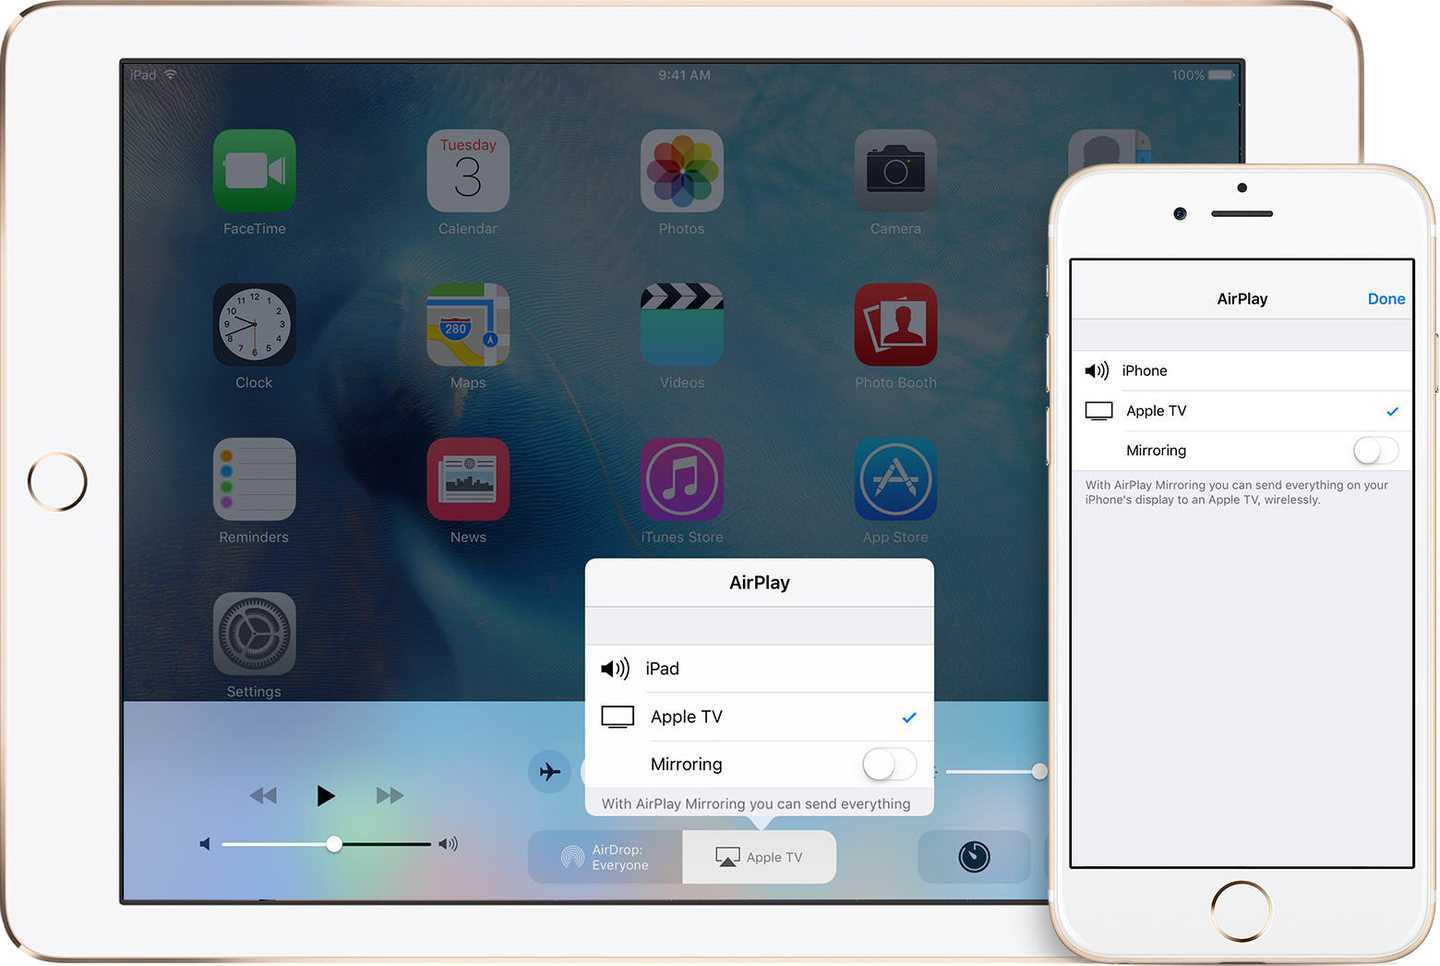 Как включить airdrop на iphone и передать фото на macbook (macos)?